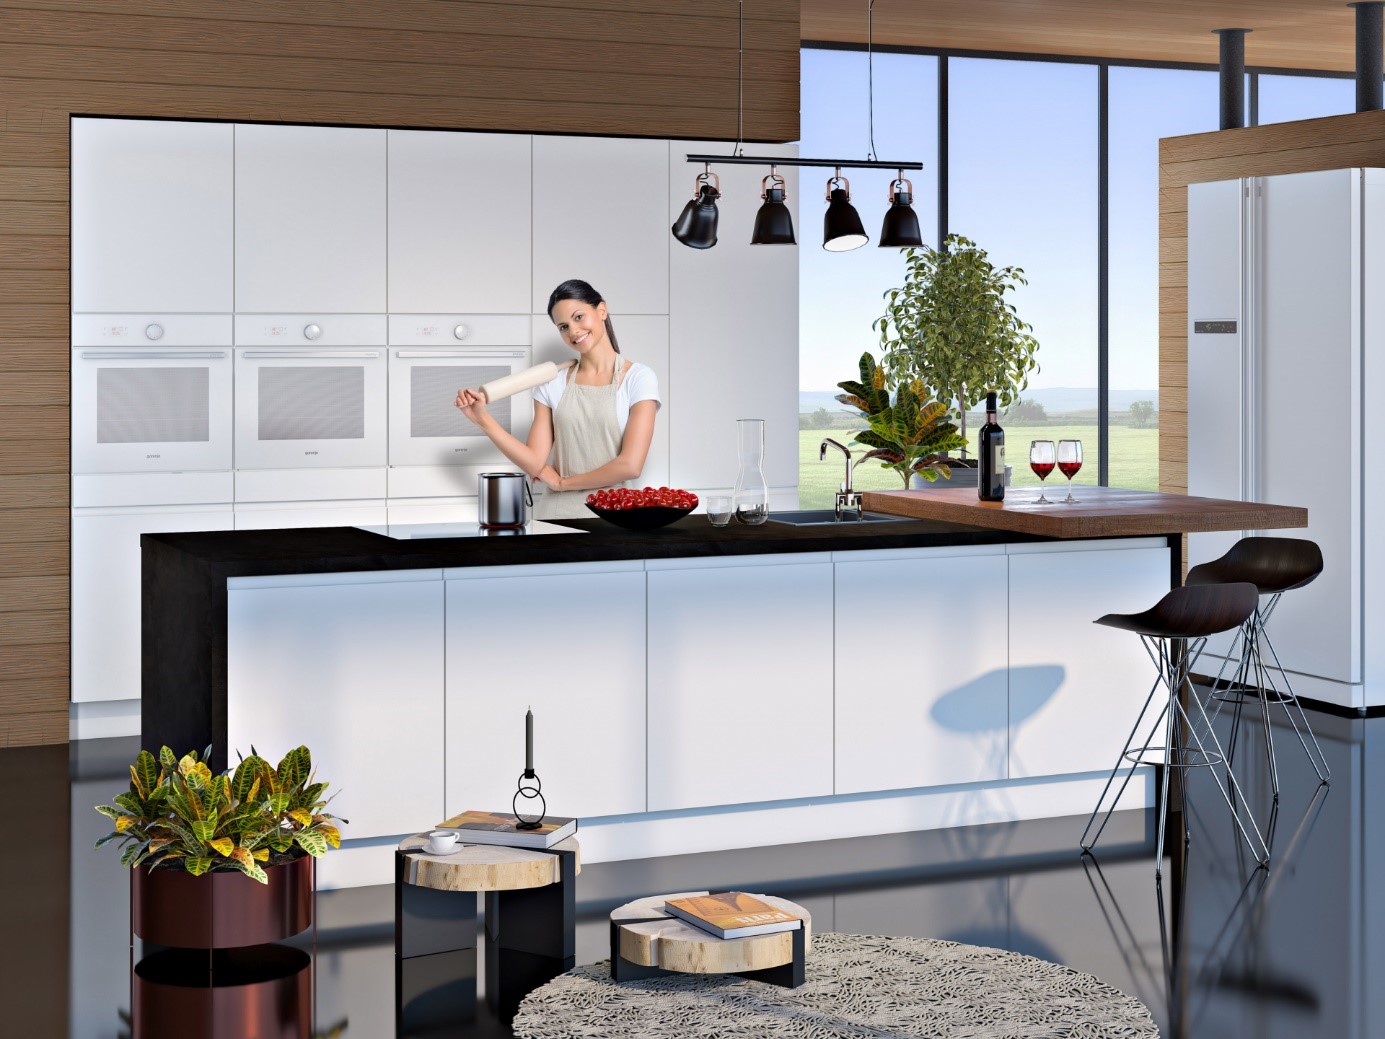 2md salon namještaja - odaberite kuhinju po mjeri vašeg prostora!